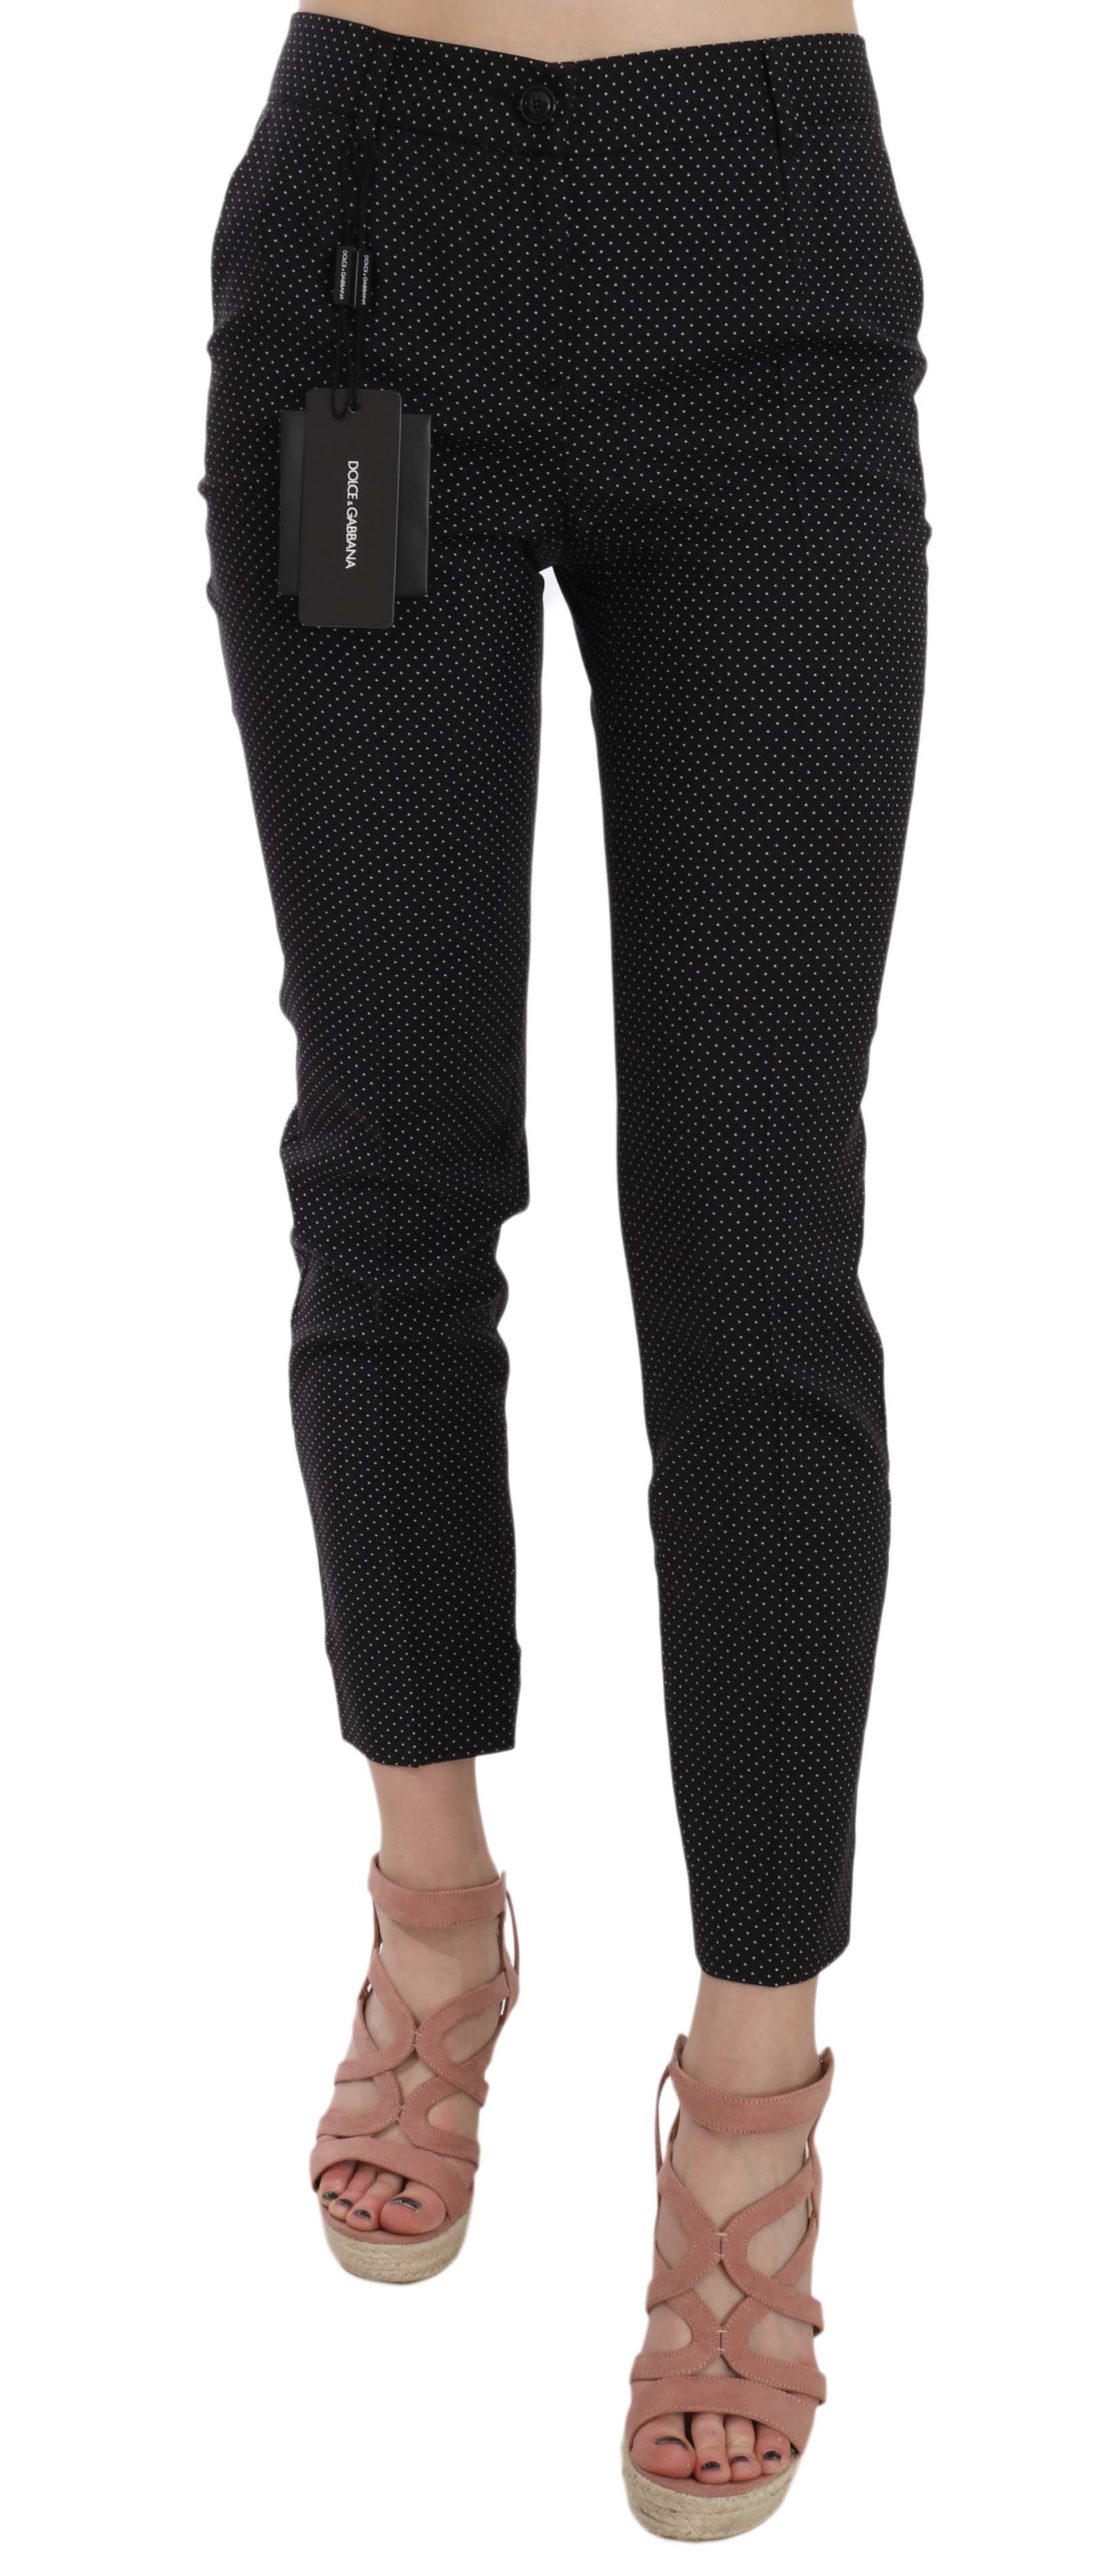 Dolce & Gabbana Women's Dot Slim Capri Trousers Black PAN70012 - IT38|XS